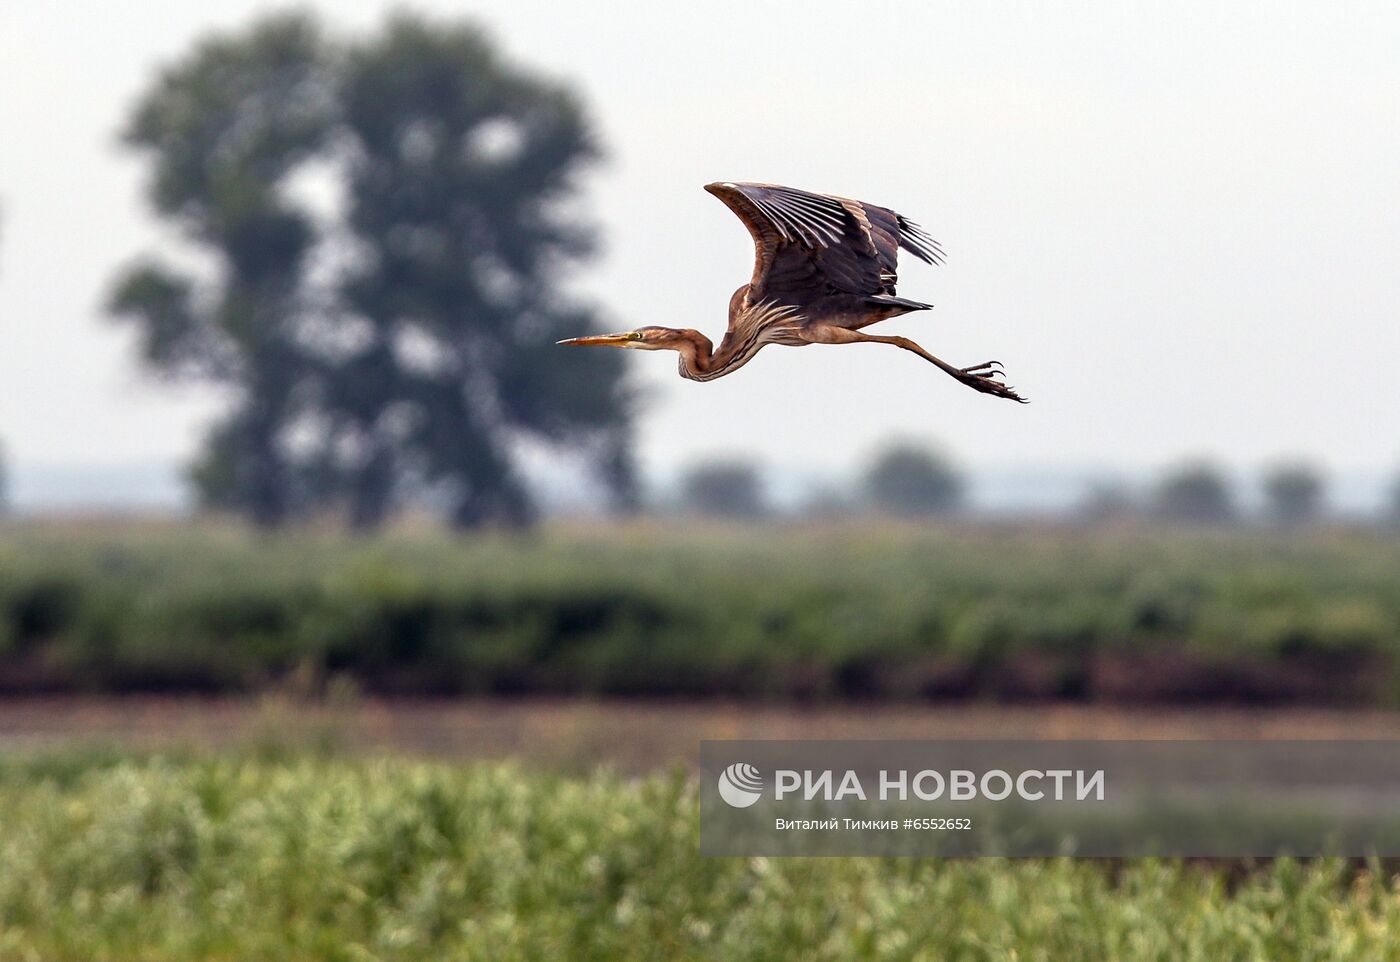 Рисовые чеки в Краснодарском крае